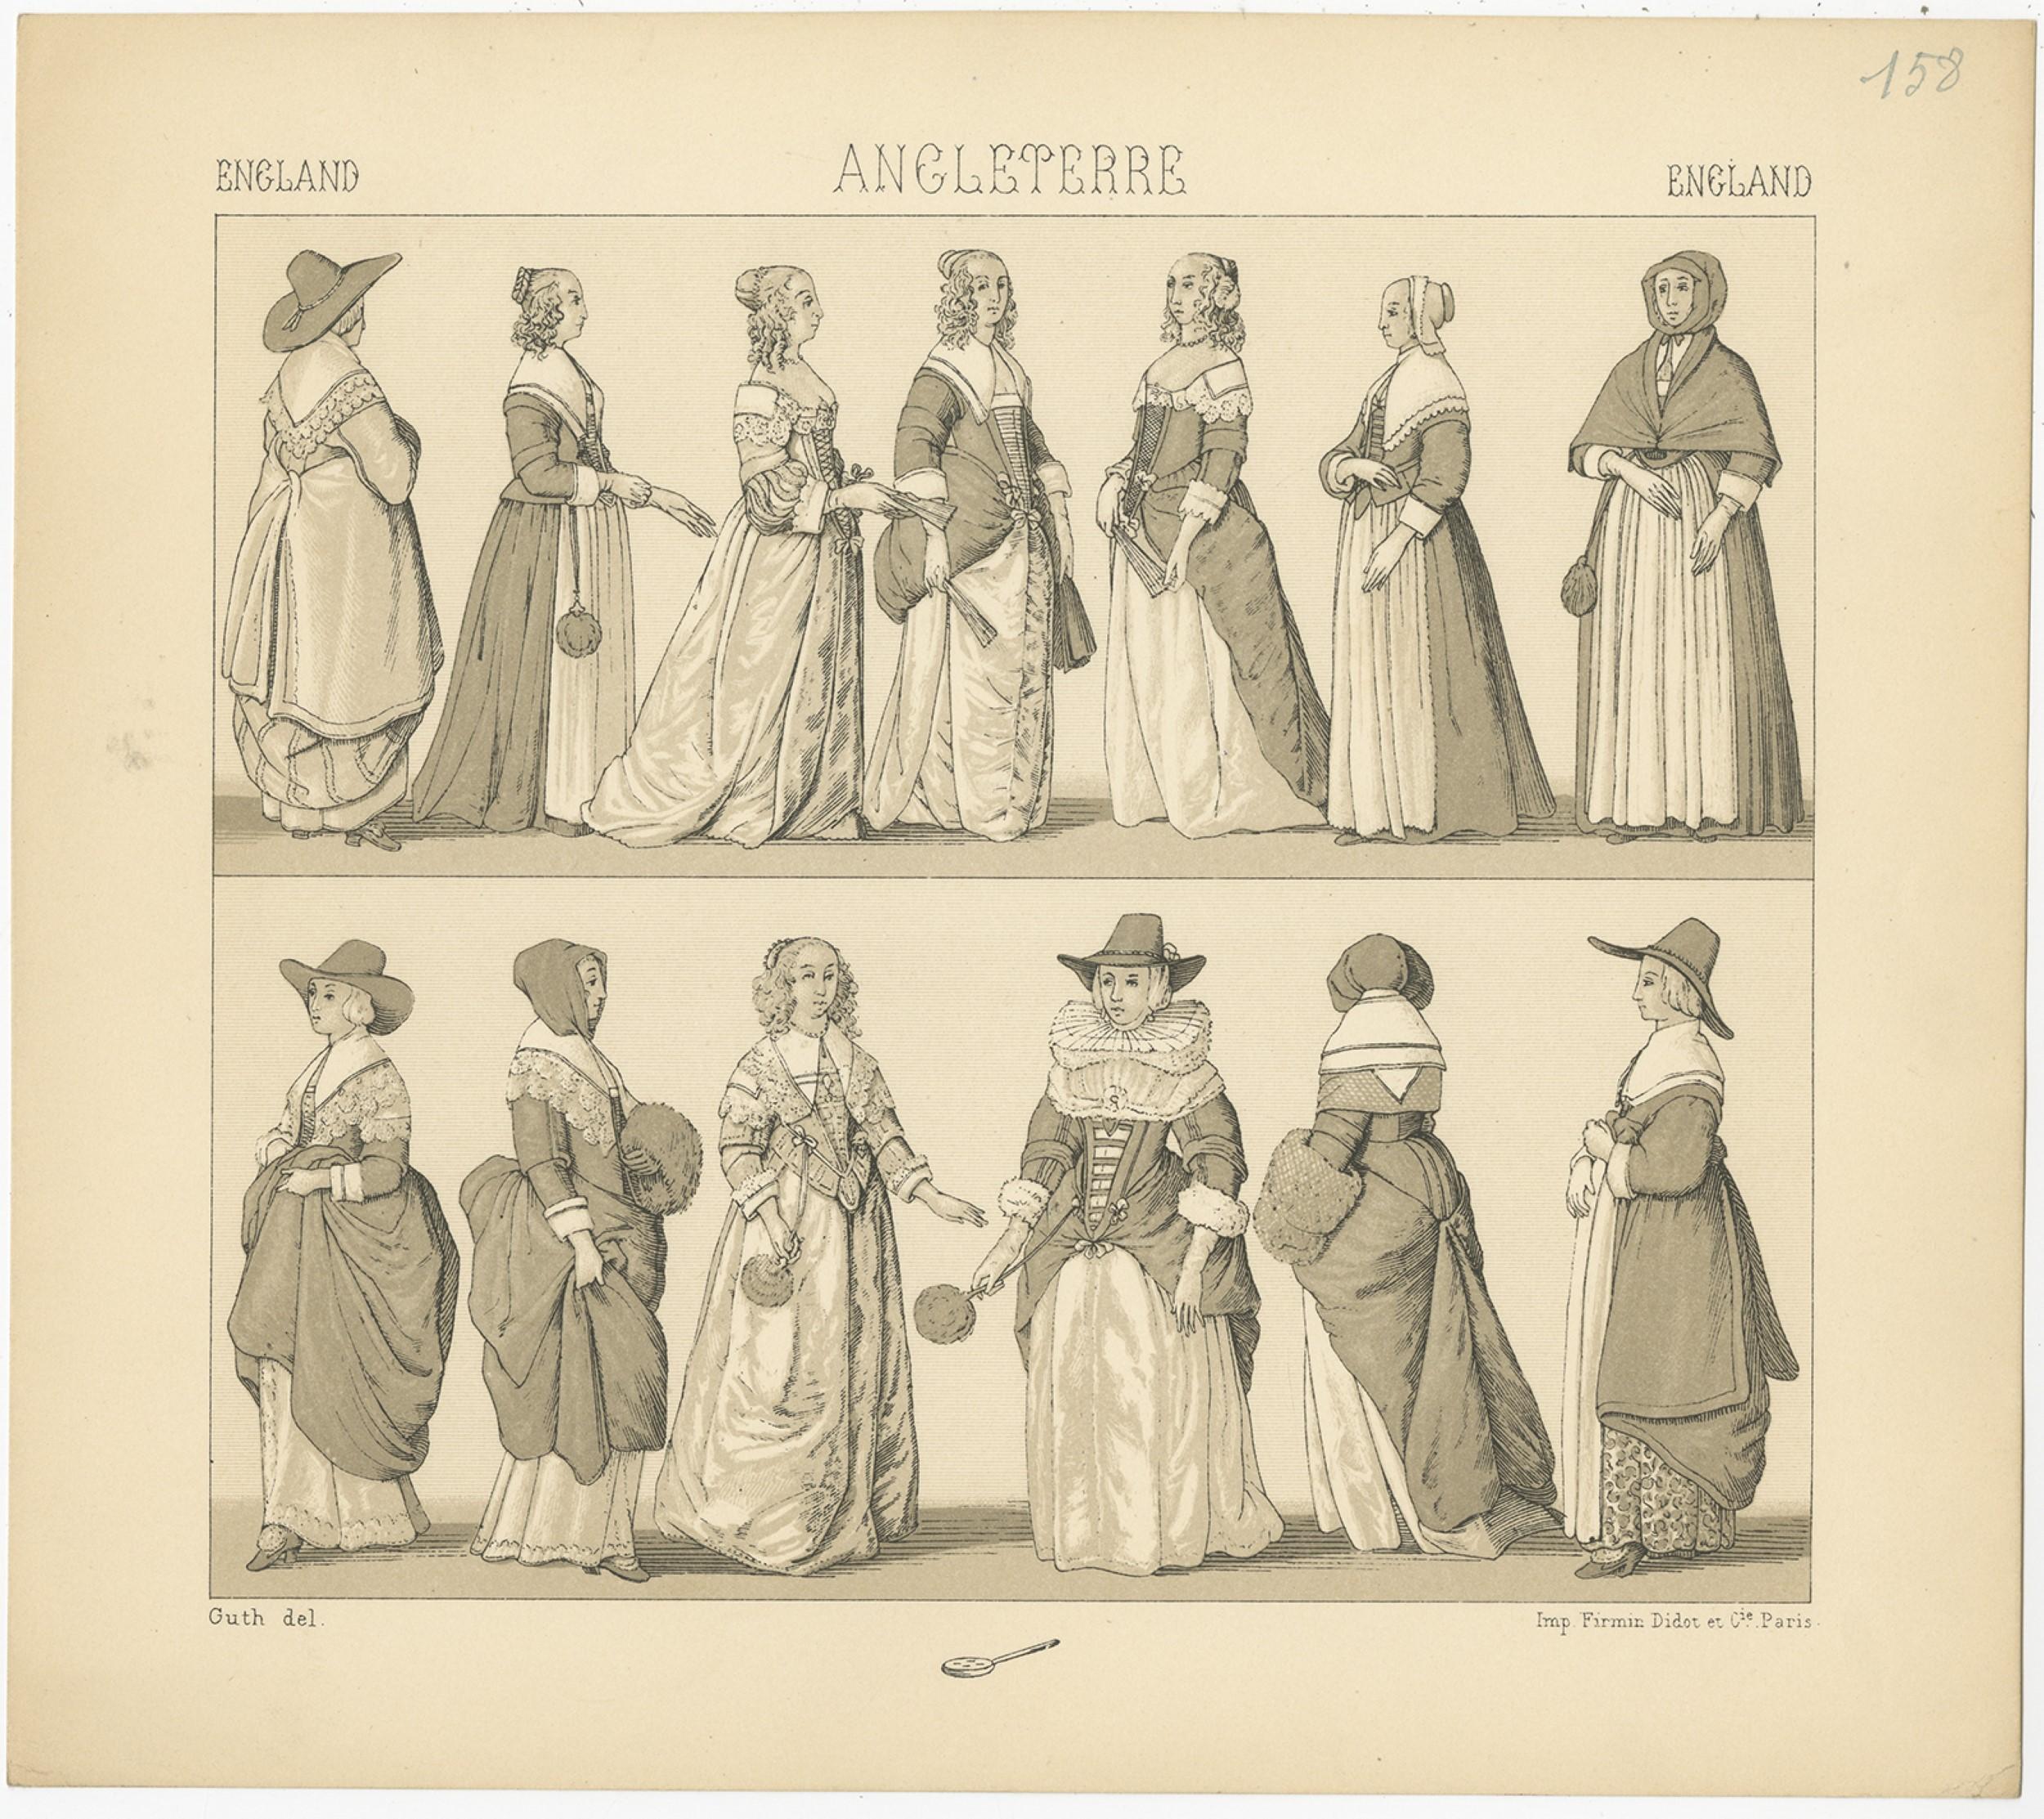 1880s dresses